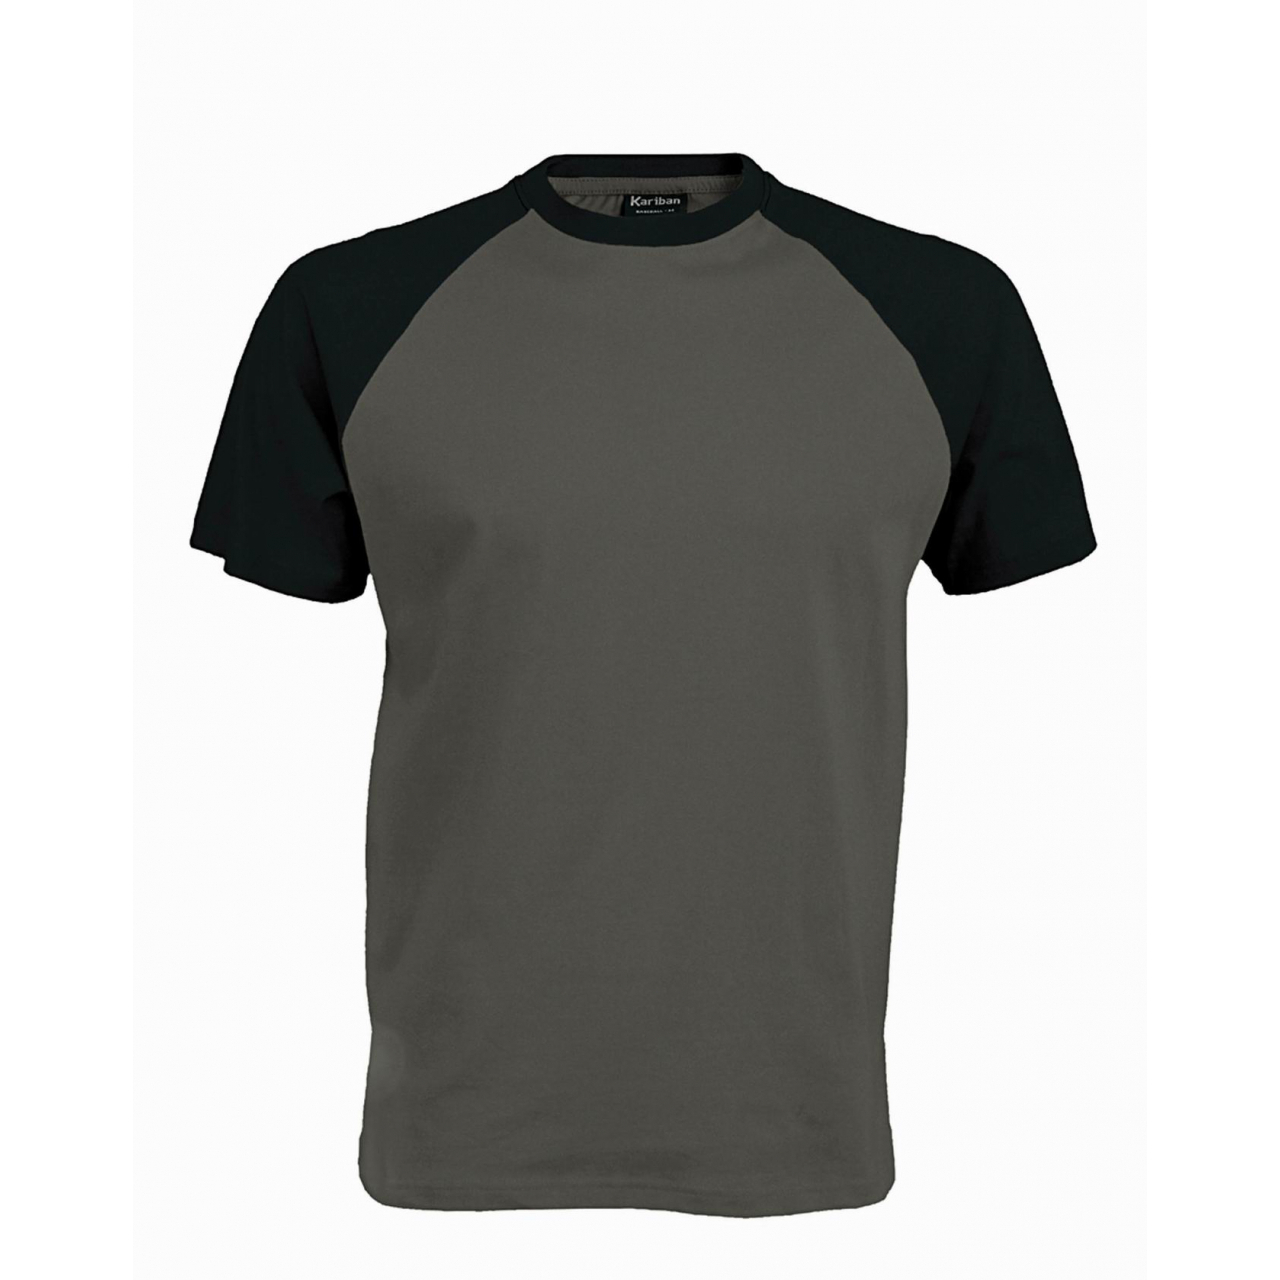 Pánské tričko Kariban BASE BALL - šedé-černé, XL